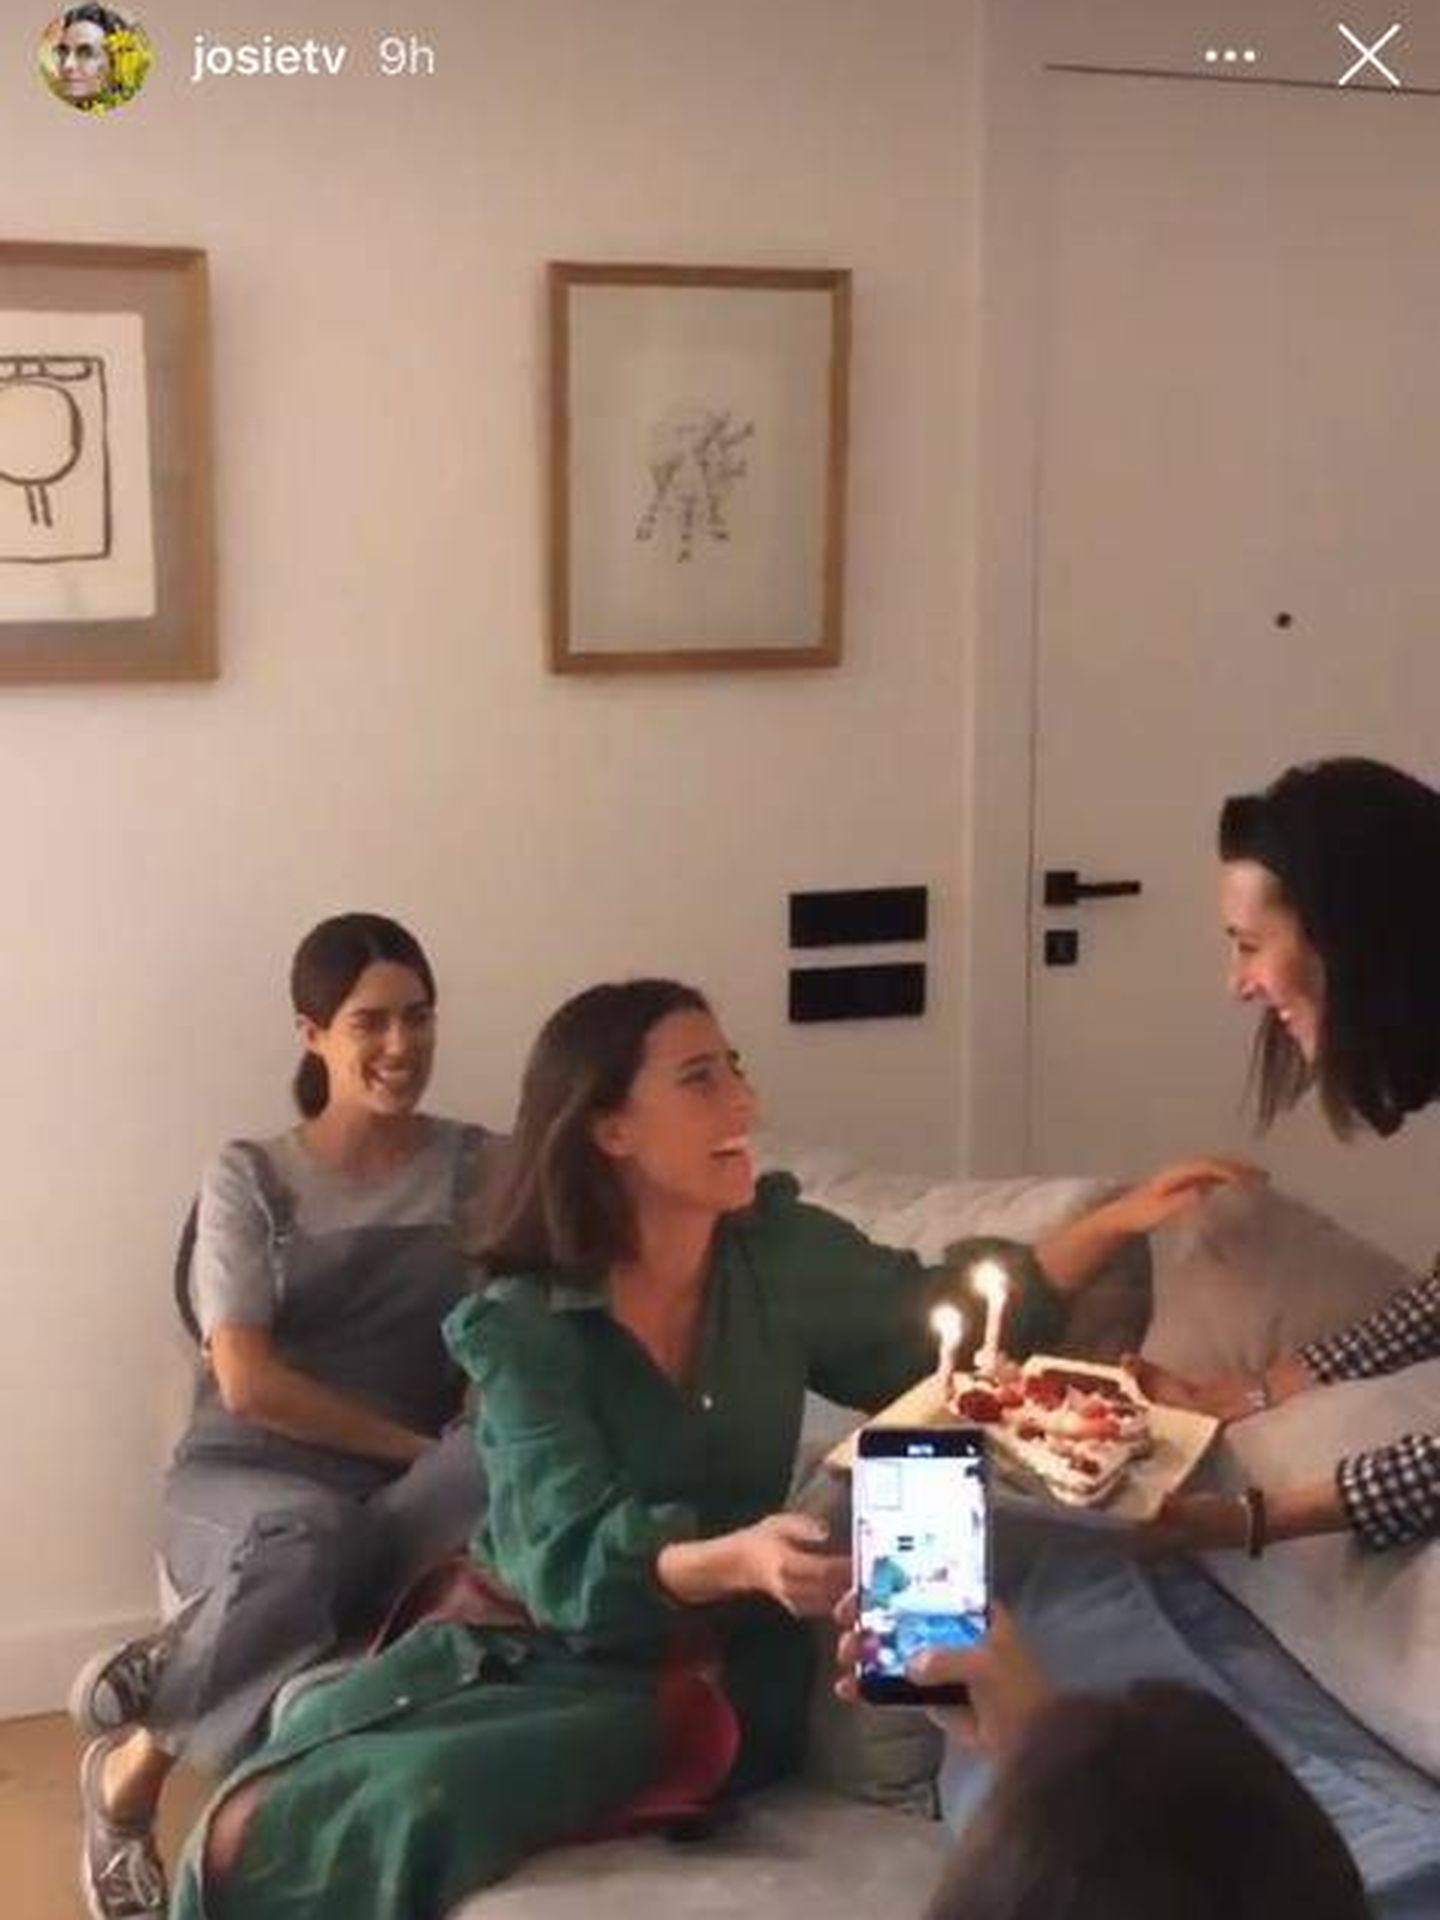 Sofía Palazuelo en una fiesta de cumpleaños en 2020. (Instagram/@josietv)